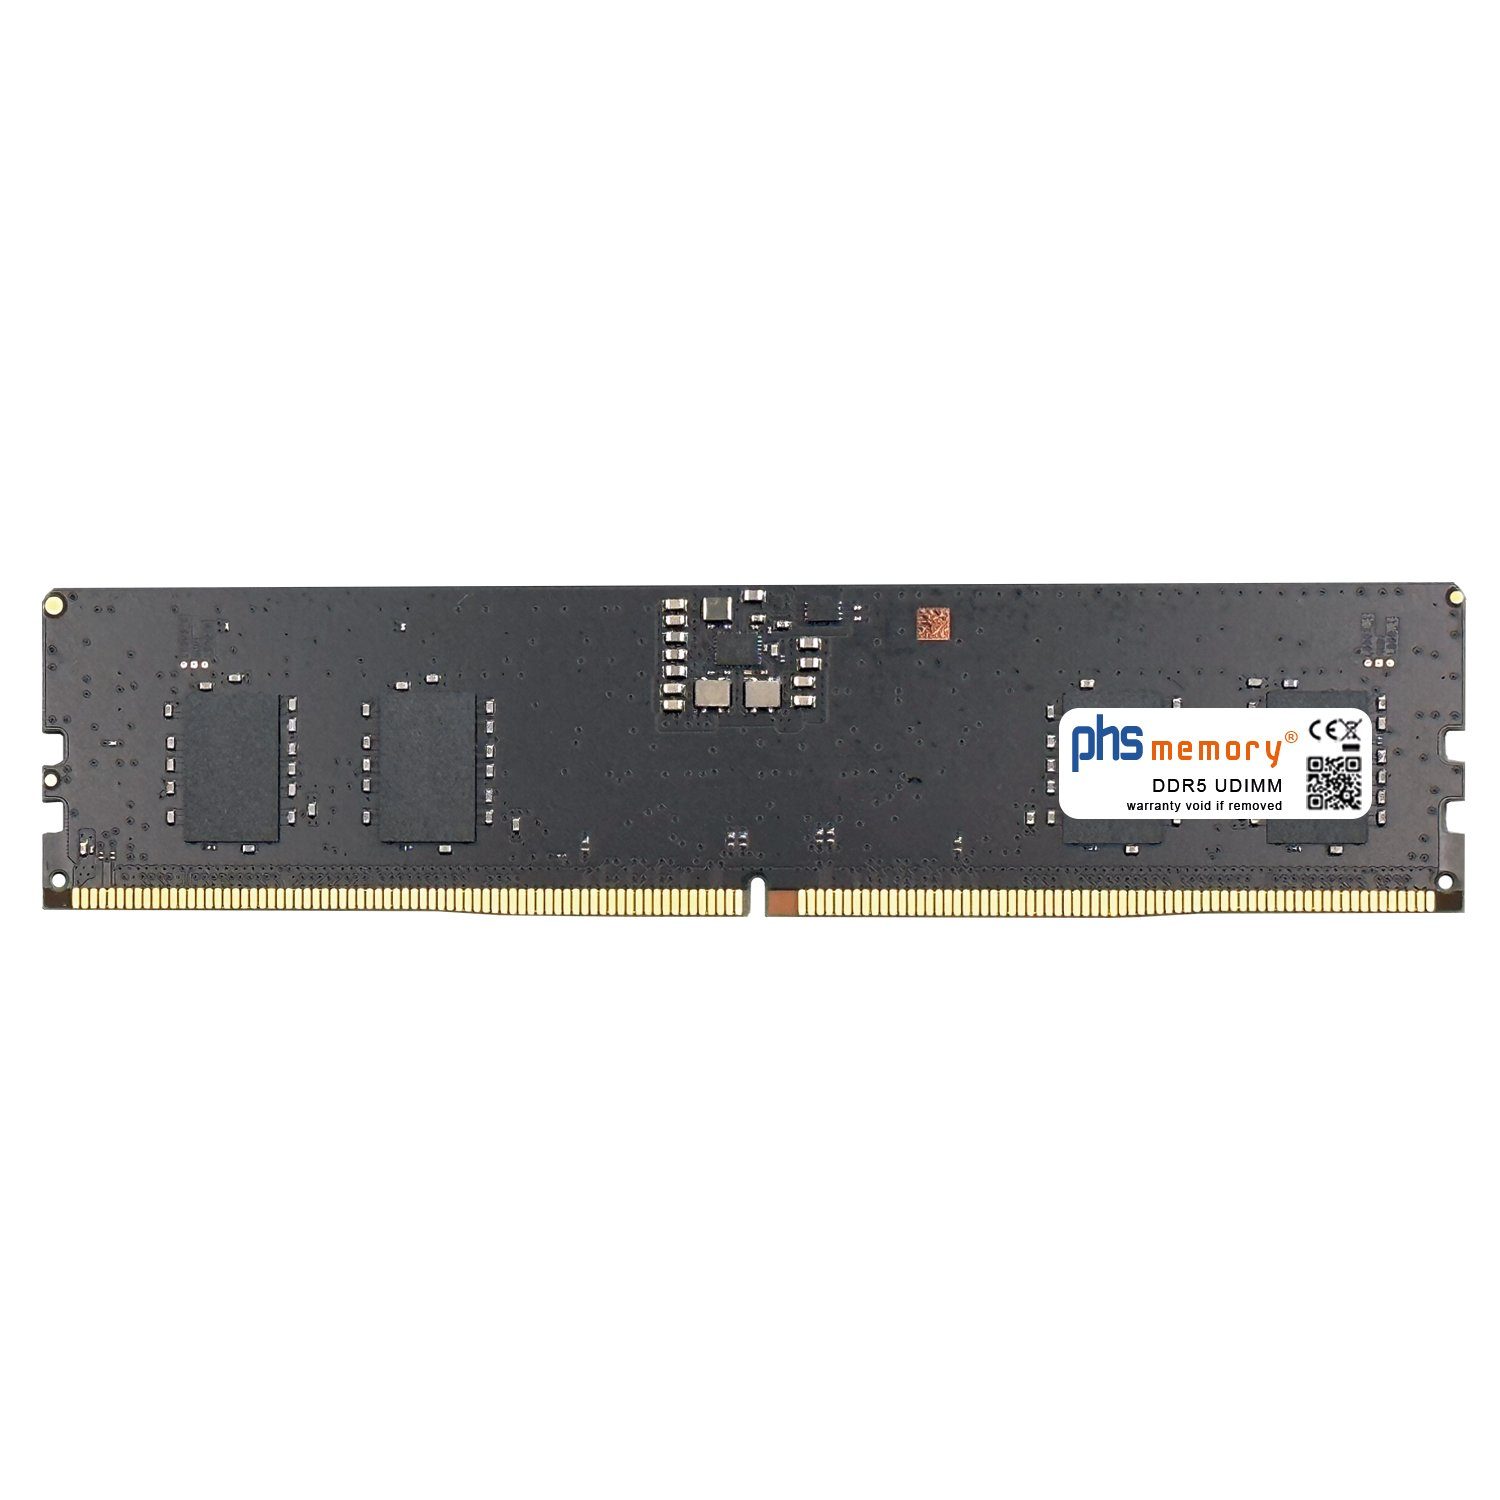 PHS-memory RAM für Captiva Highend Gaming R73-986 Arbeitsspeicher